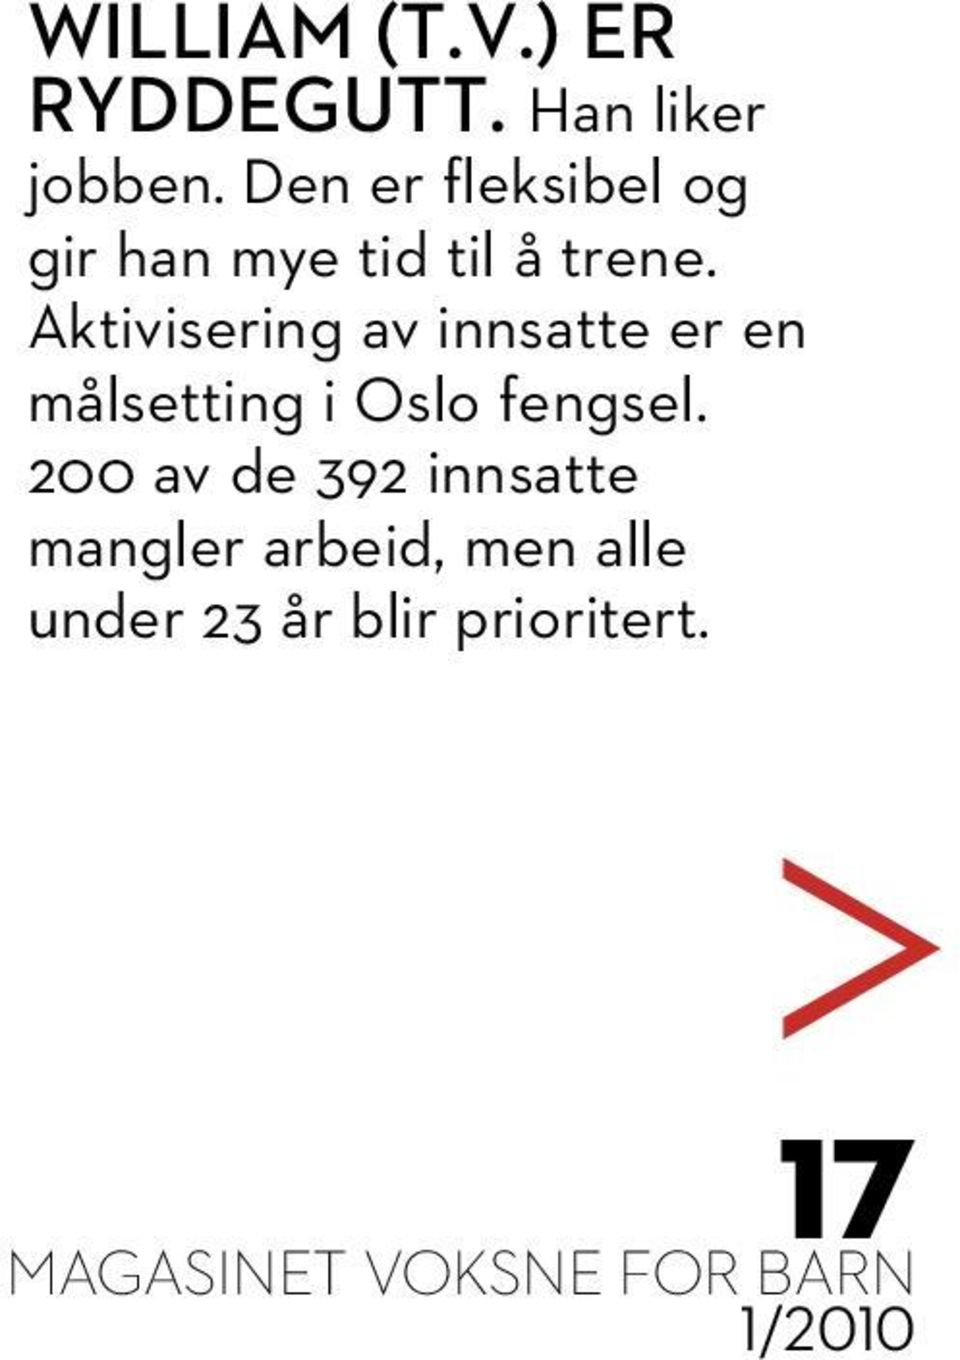 Aktivisering av innsatte er en målsetting i Oslo fengsel.